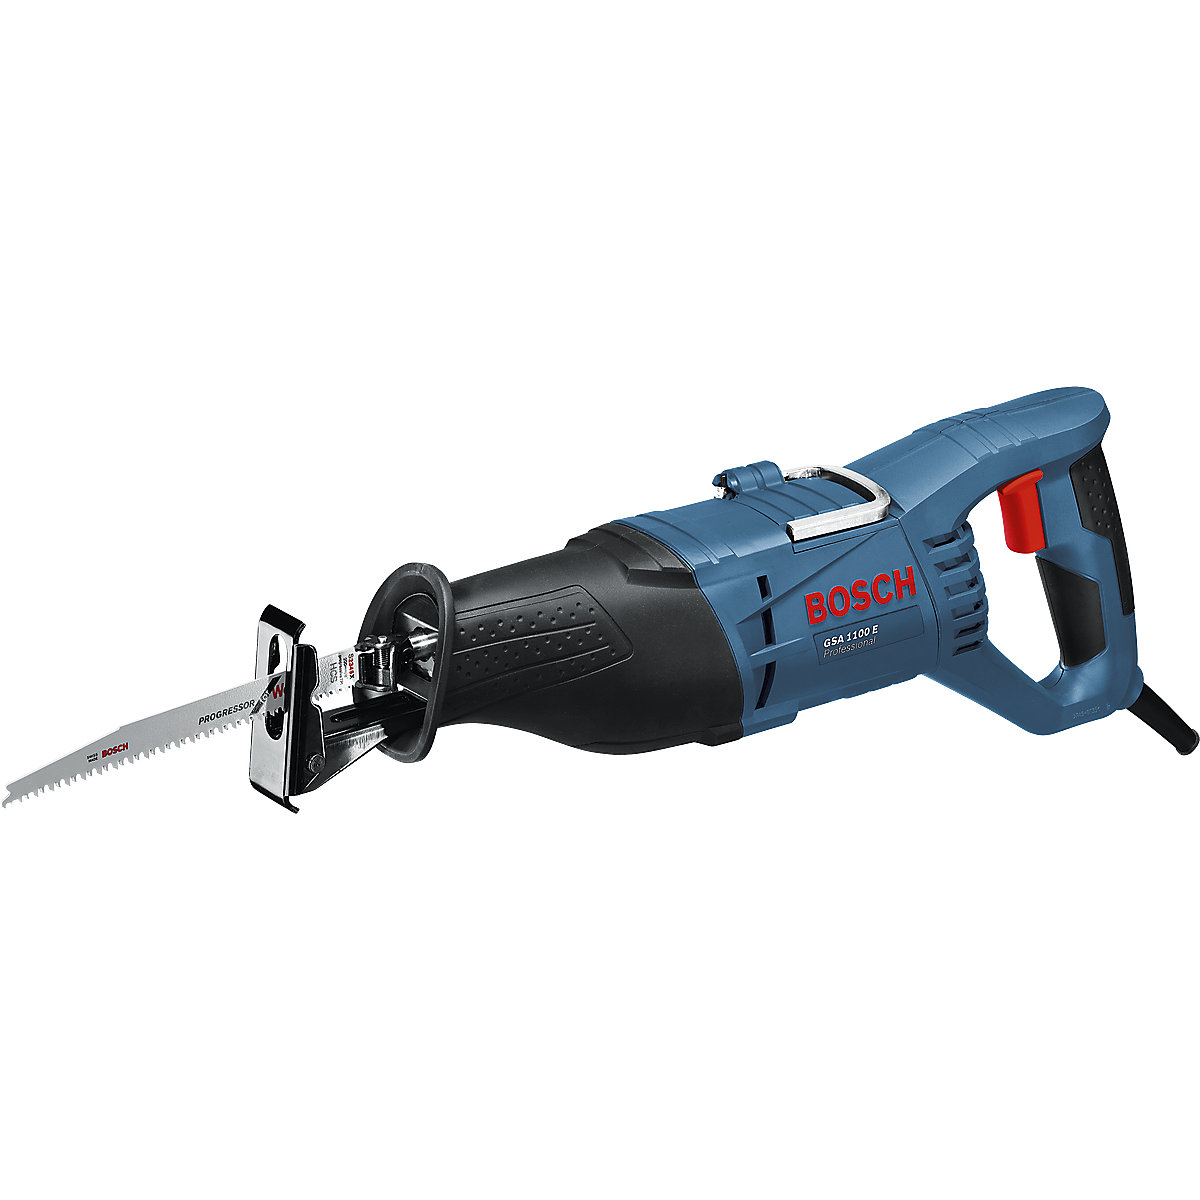 GSA 1100 E Professional reciprocating saw - Bosch